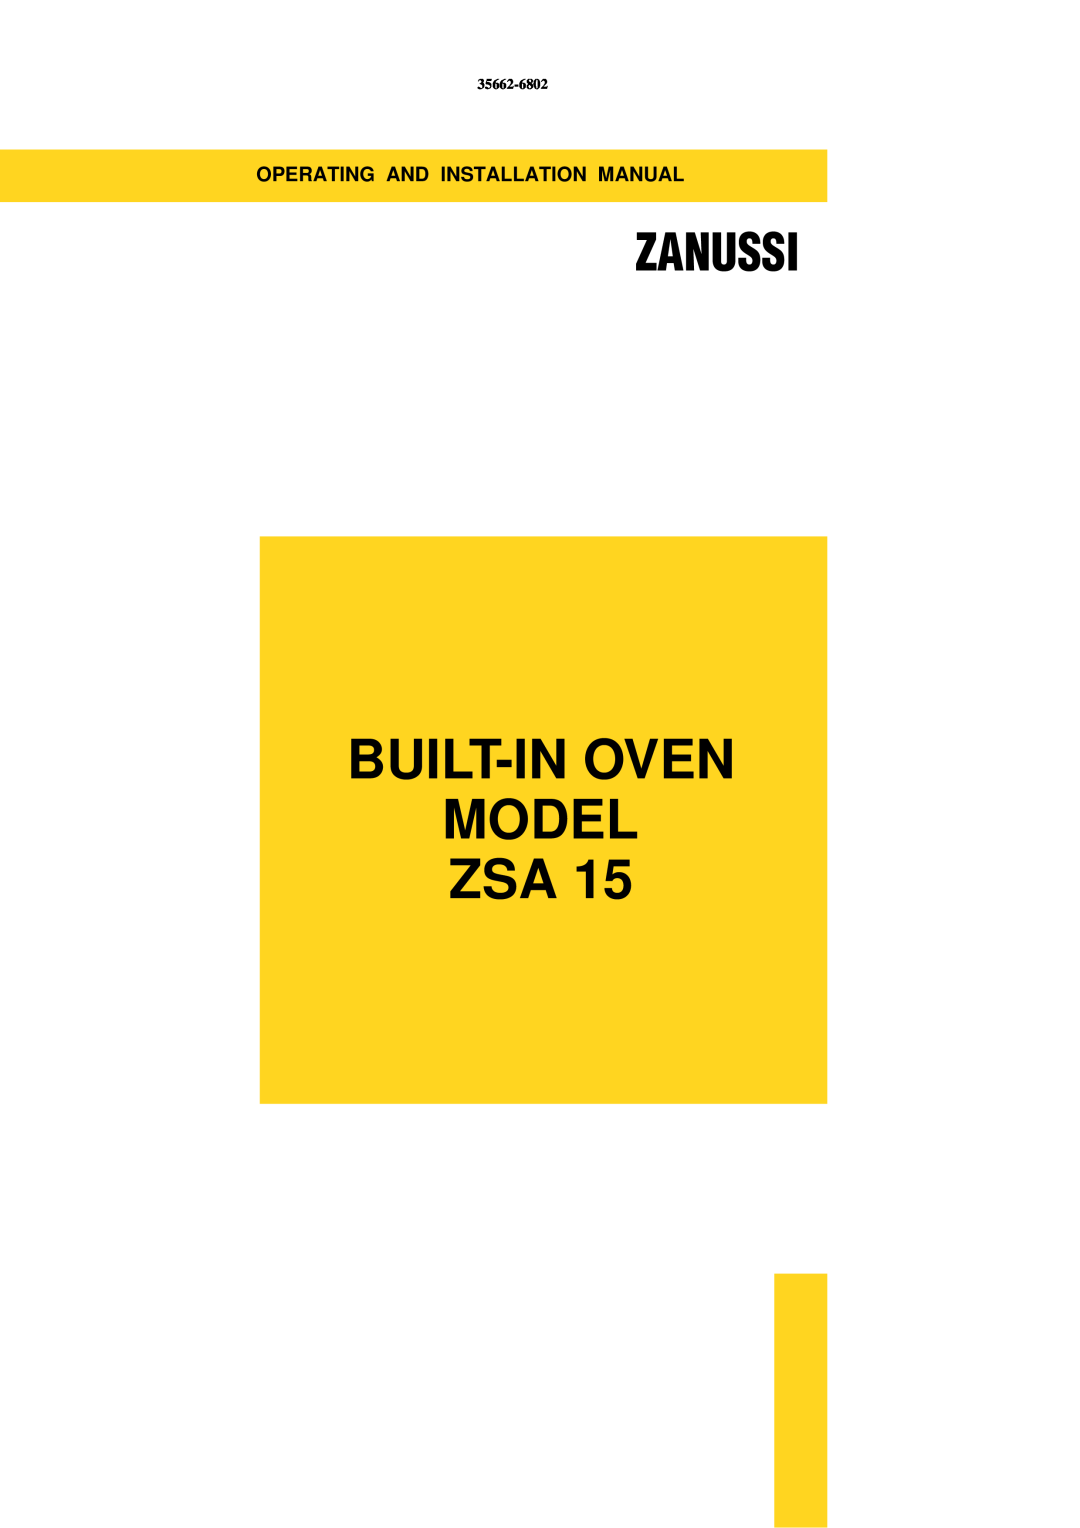 Zanussi ZSA 15 installation manual Built-In Oven Model Zsa, Zanussi, 35662-6802 